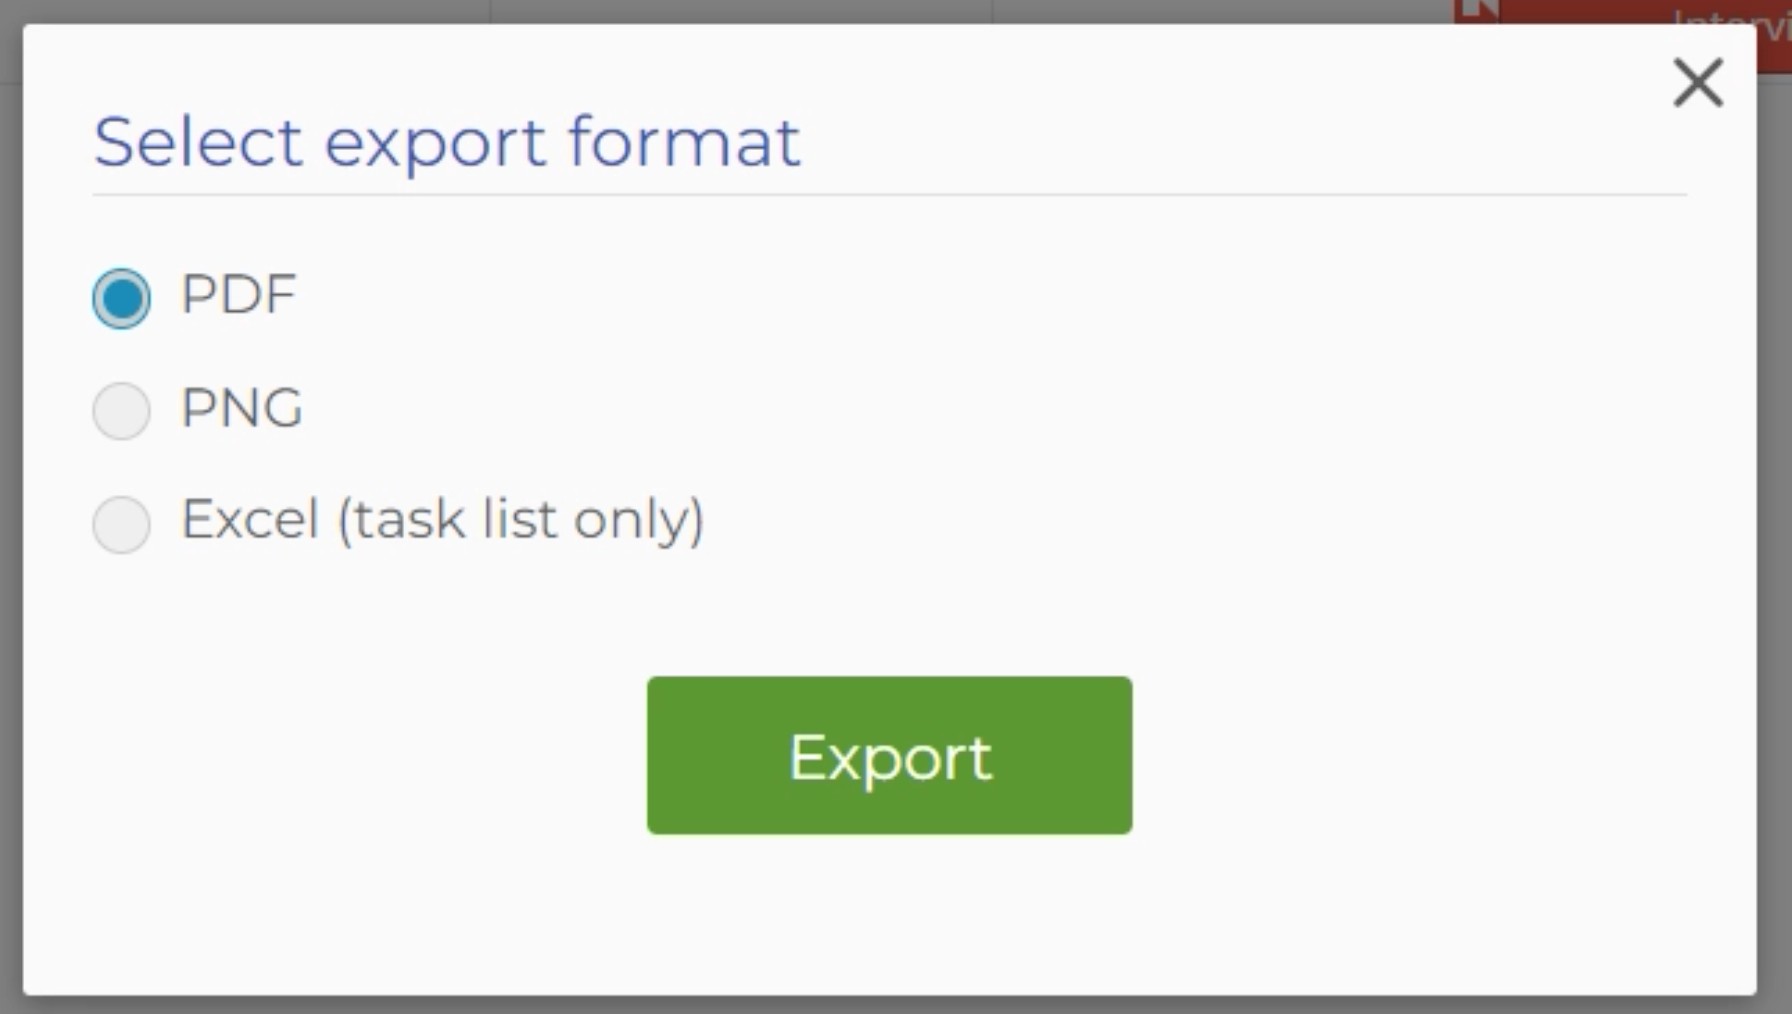 "Choose export format" pop-up menu.